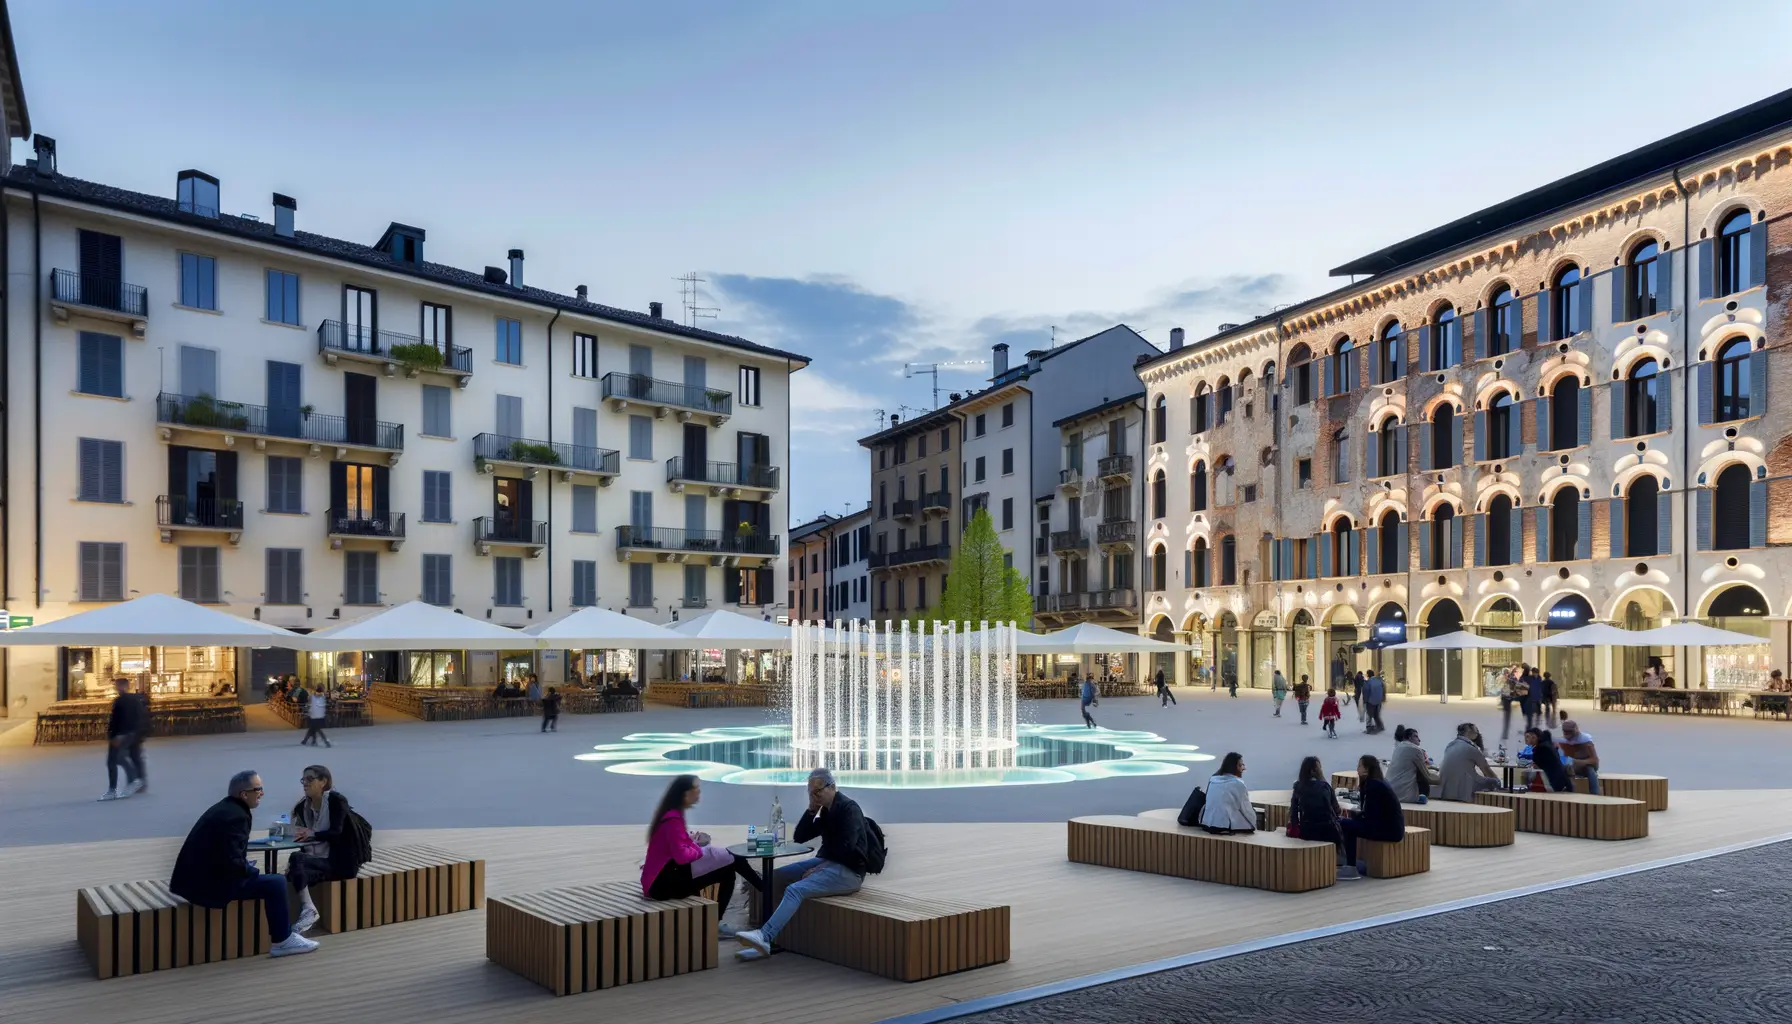 Abendszene auf einer Stadt-Piazza, die alte und neue Architektur vereint